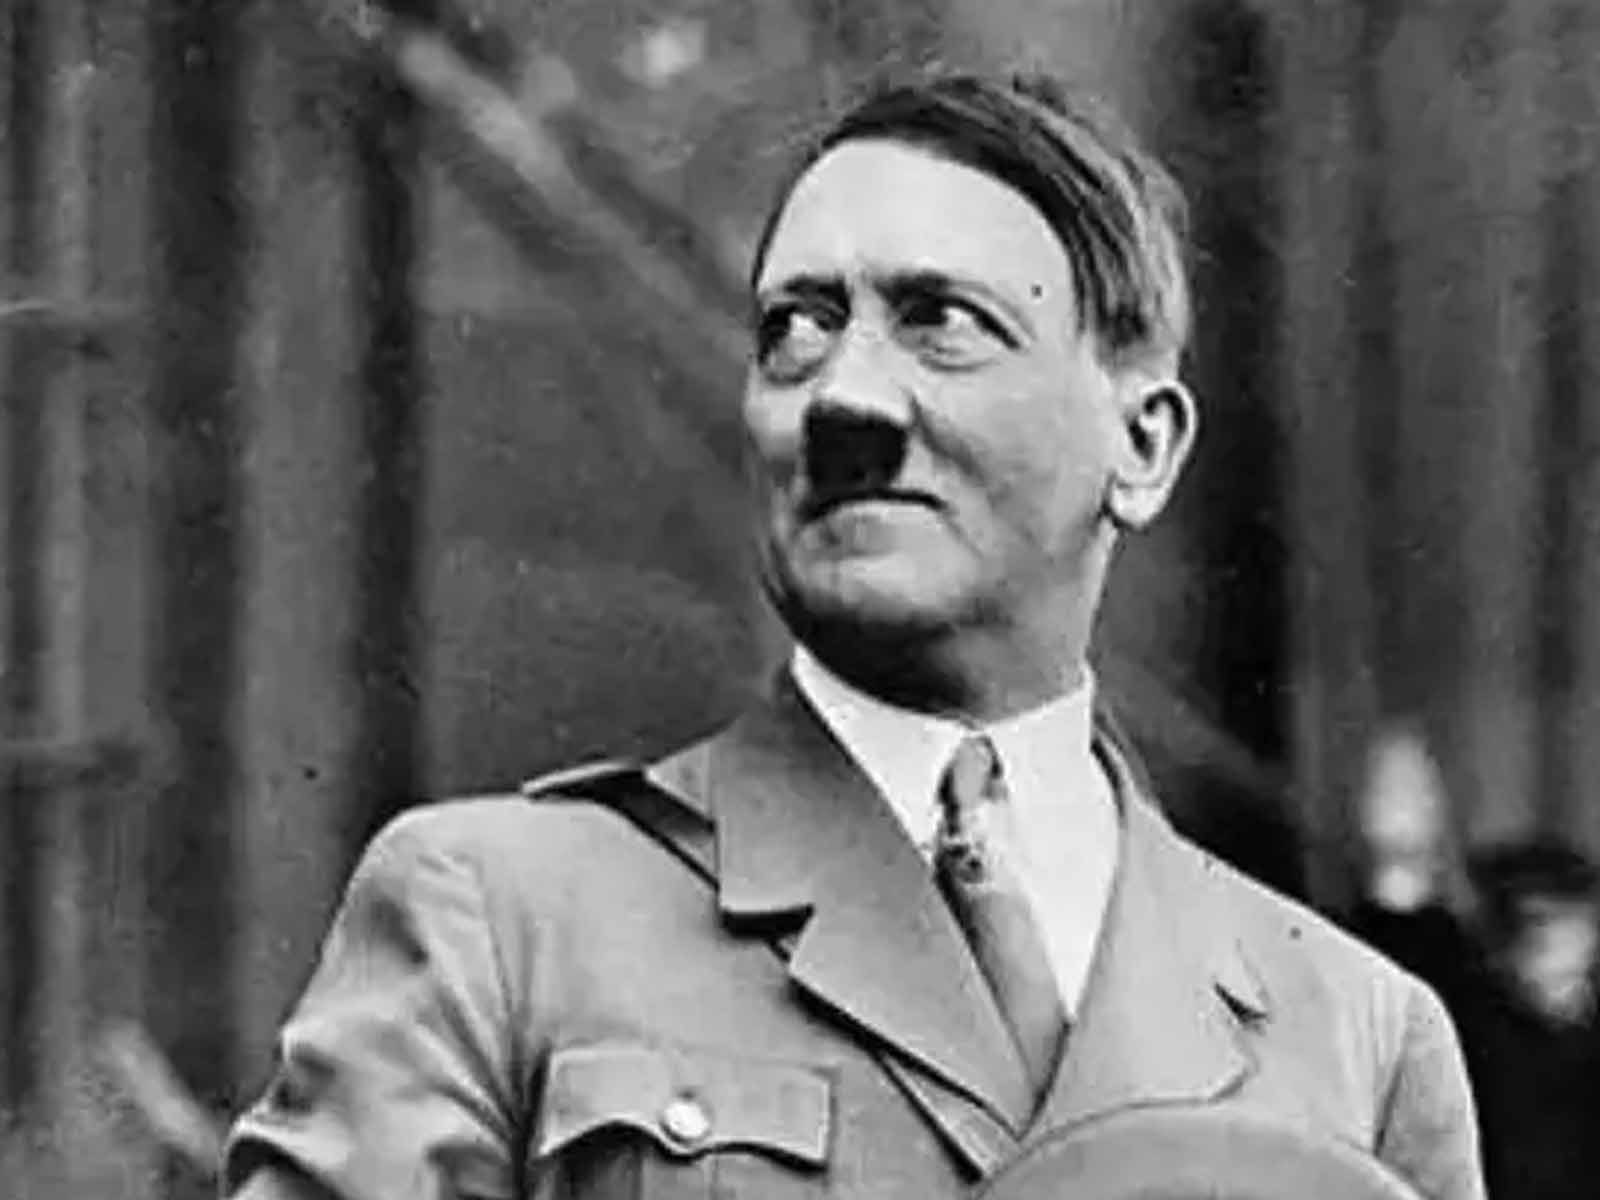 ਖੁਦਕੁਸ਼ੀ ਤੋਂ ਪਹਿਲਾਂ ਟੁੱਟ ਗਿਆ ਸੀ "Hitler", ਰੂਸ ਨੇ ਆਖਰੀ ਘੰਟਿਆਂ ਦੇ ਵੇਰਵਿਆਂ ਦਾ ਕੀਤਾ ਖੁਲਾਸਾ
